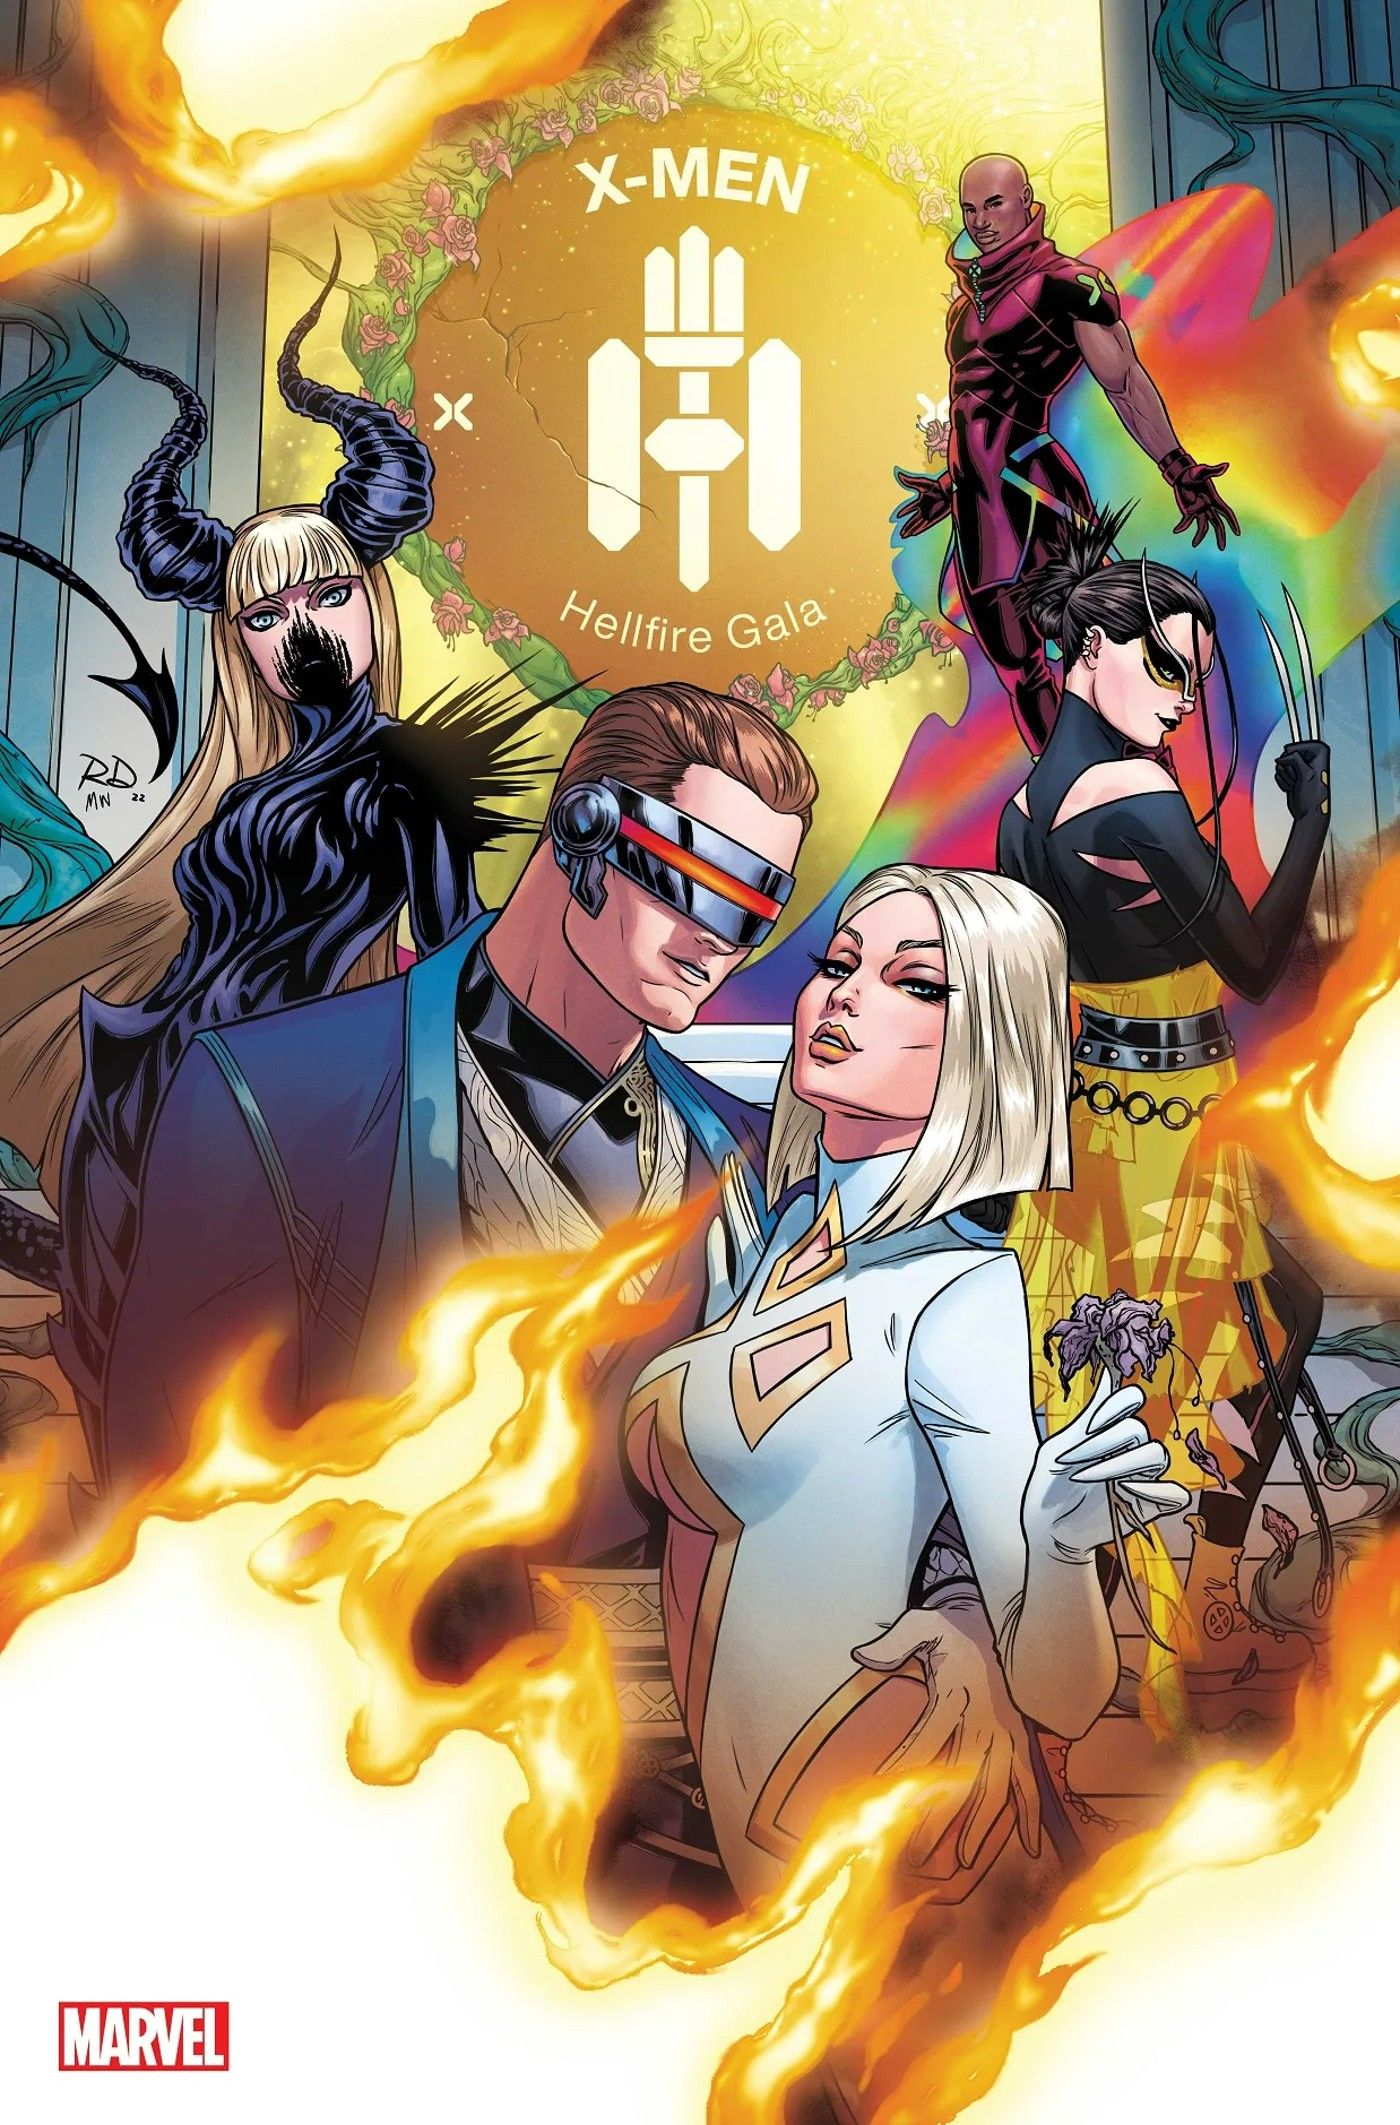 X-Men’s Hellfire Gala 2022 Brings A New Team, Betrayal, and Lots of Fashion